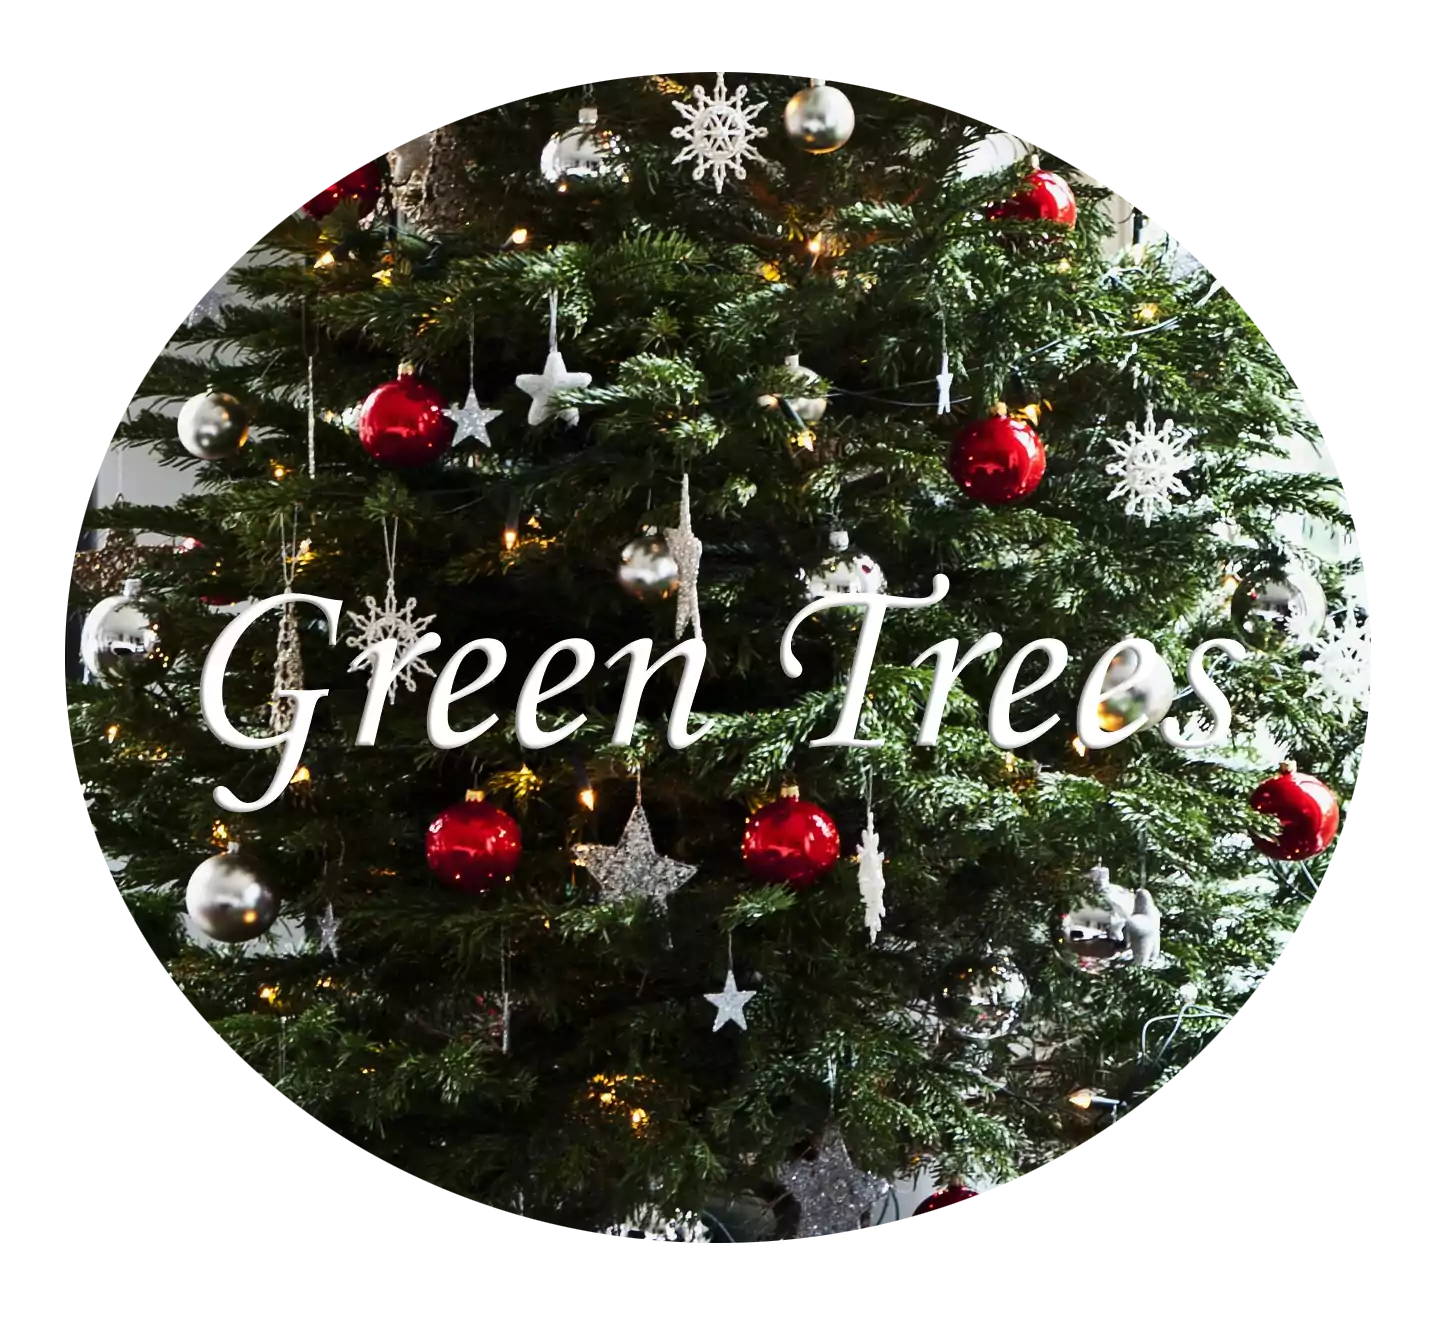  Green Trees  у официального сайта дилера искусственных елок .